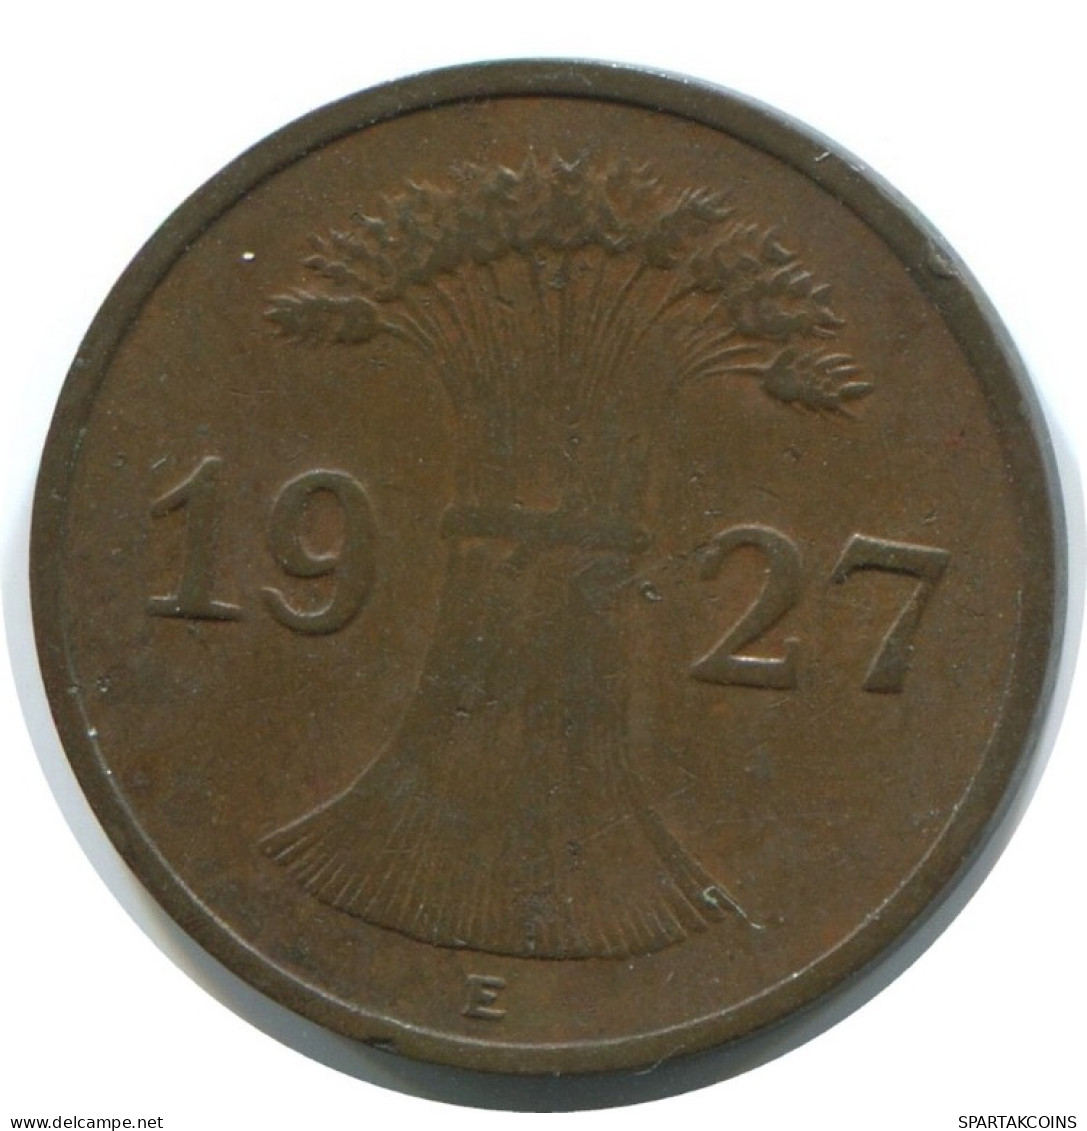 1 REICHSPFENNIG 1927 E ALLEMAGNE Pièce GERMANY #AE209.F.A - 1 Rentenpfennig & 1 Reichspfennig